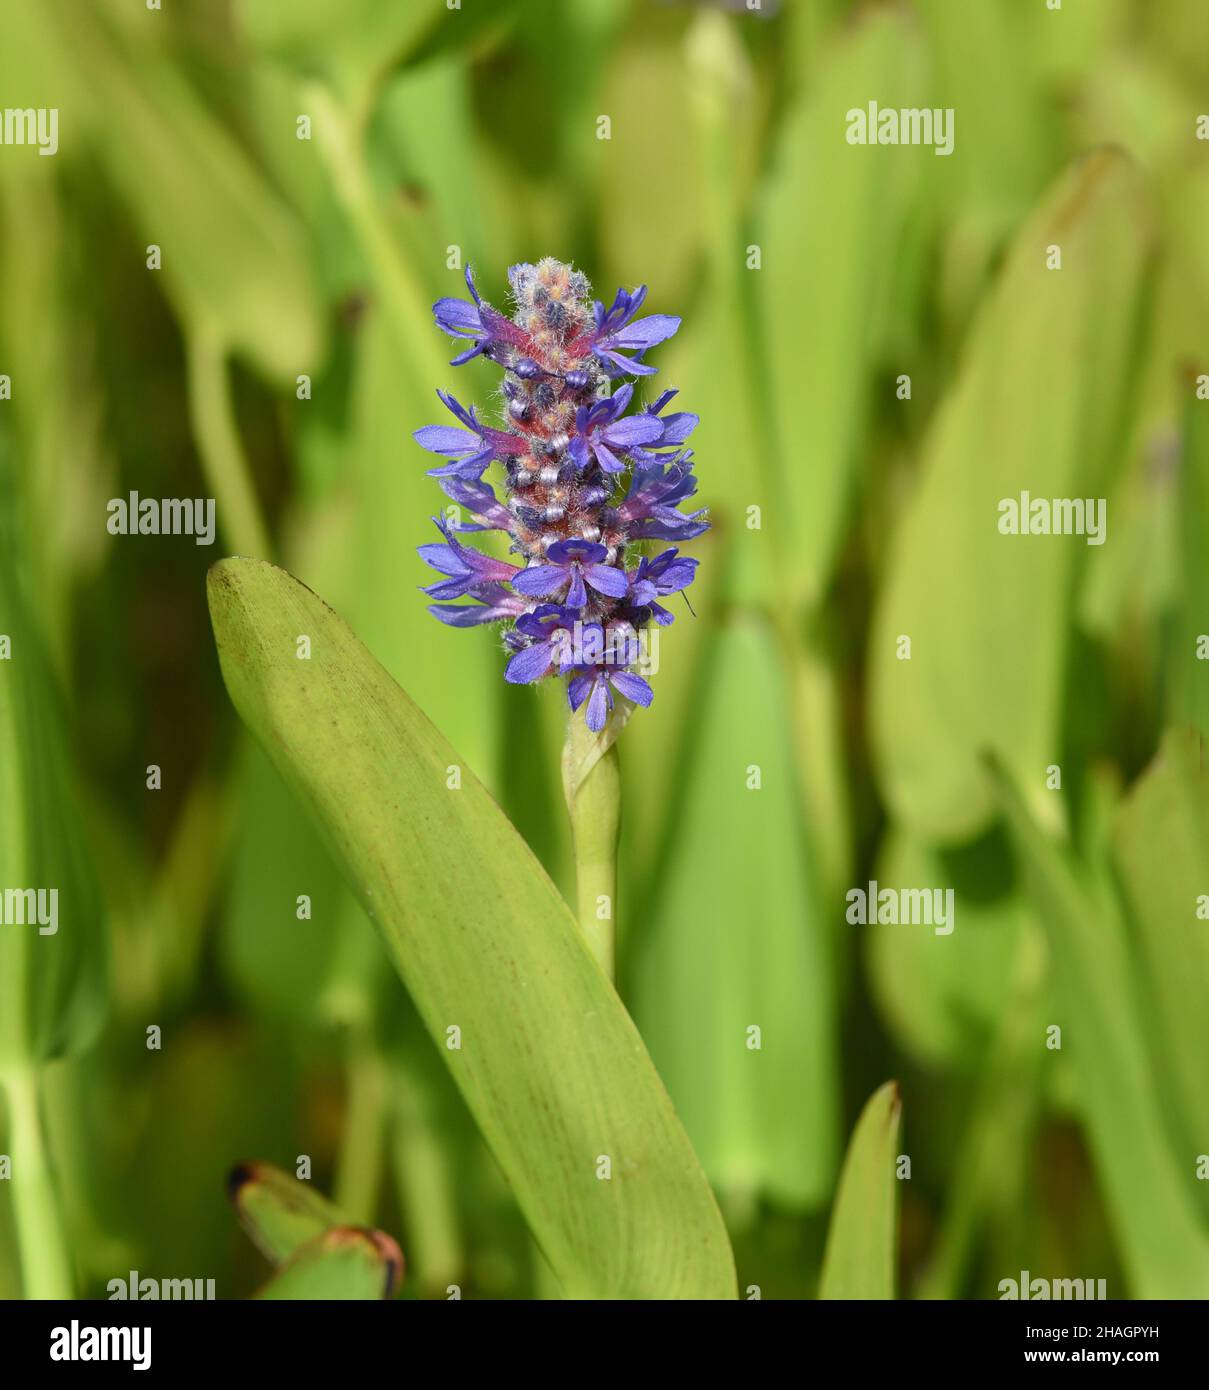 Hechtkraut, Pontederia cordata, ist eine Wasserpflanze mit blauen Blueten. Pike weed, Pontederia cordata, is an aquatic plant with blue flowers. Stock Photo